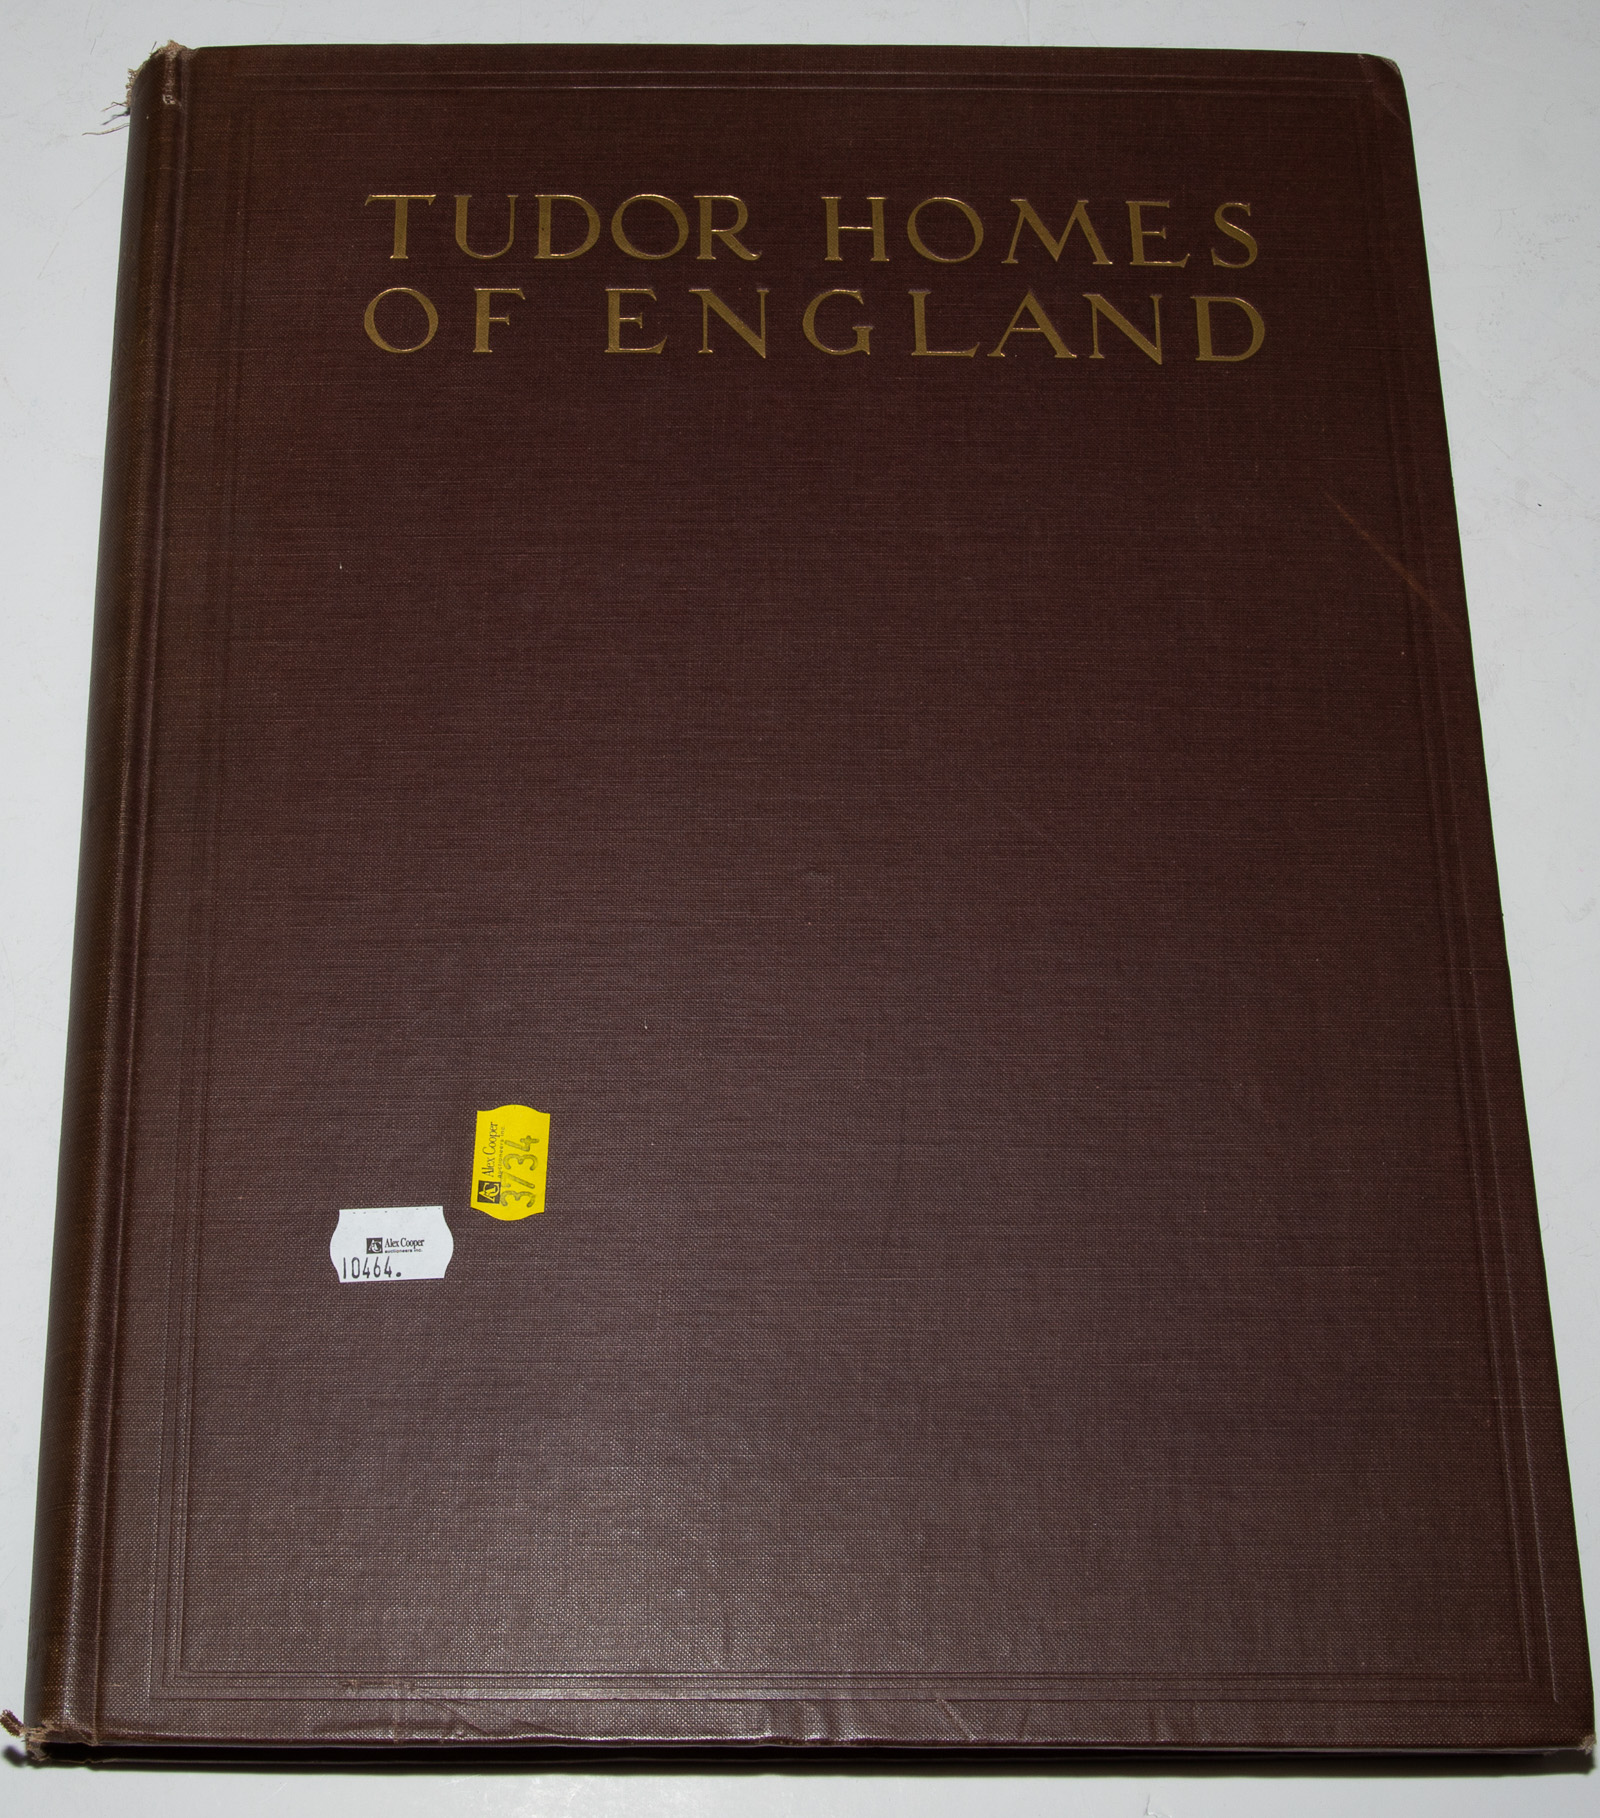 RARE BOOK ON TUDOR HOMES, 1929